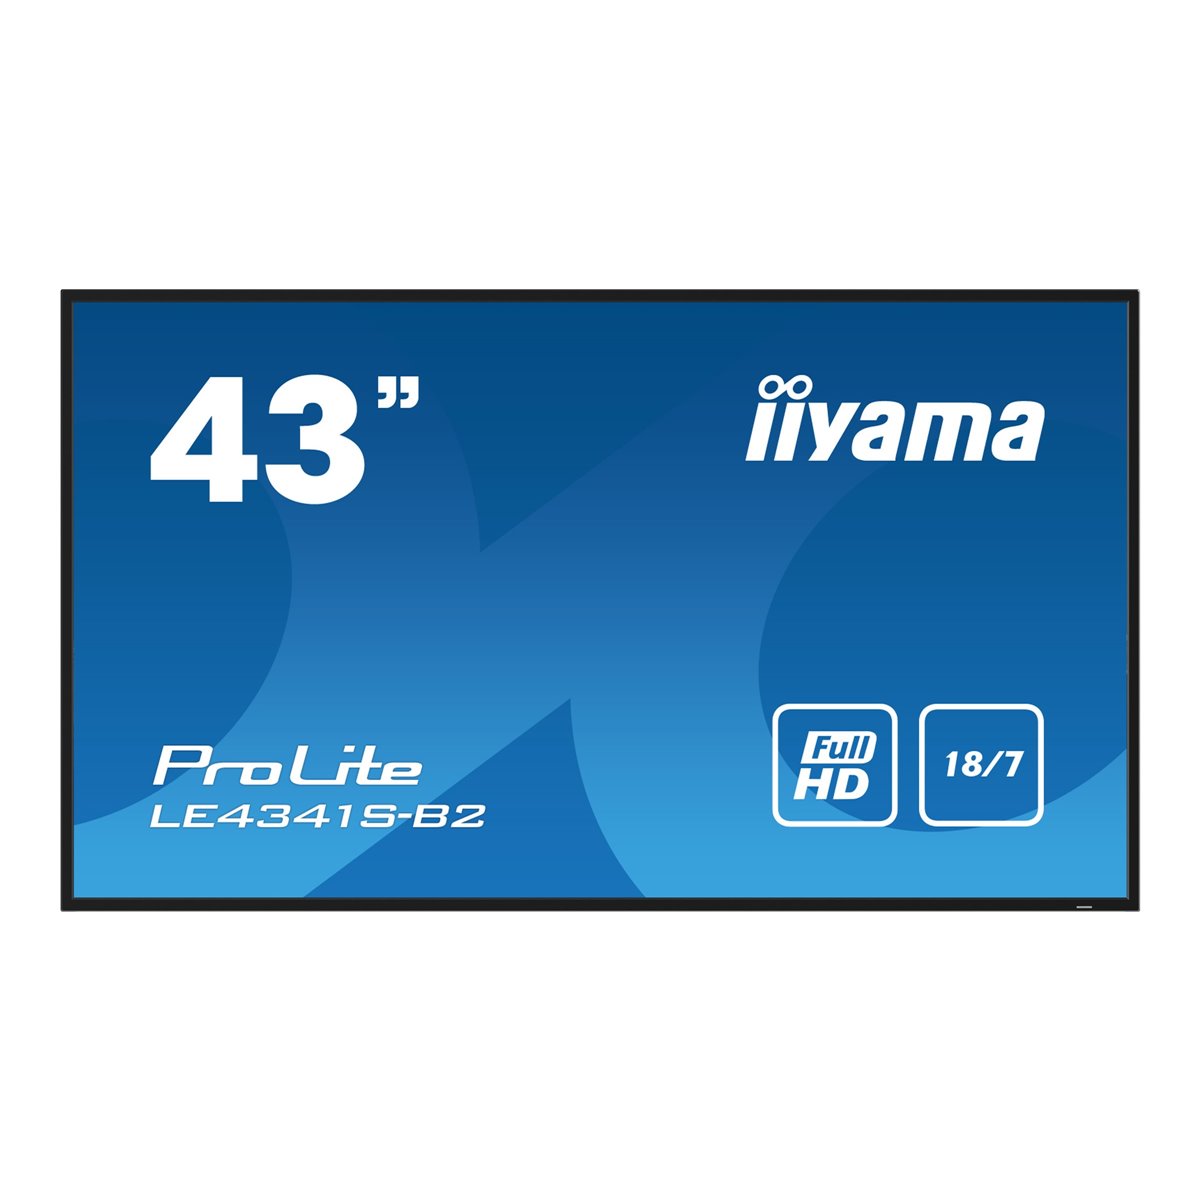 Iiyama 43W LCD Full HD IPS - Flat Screen - 43